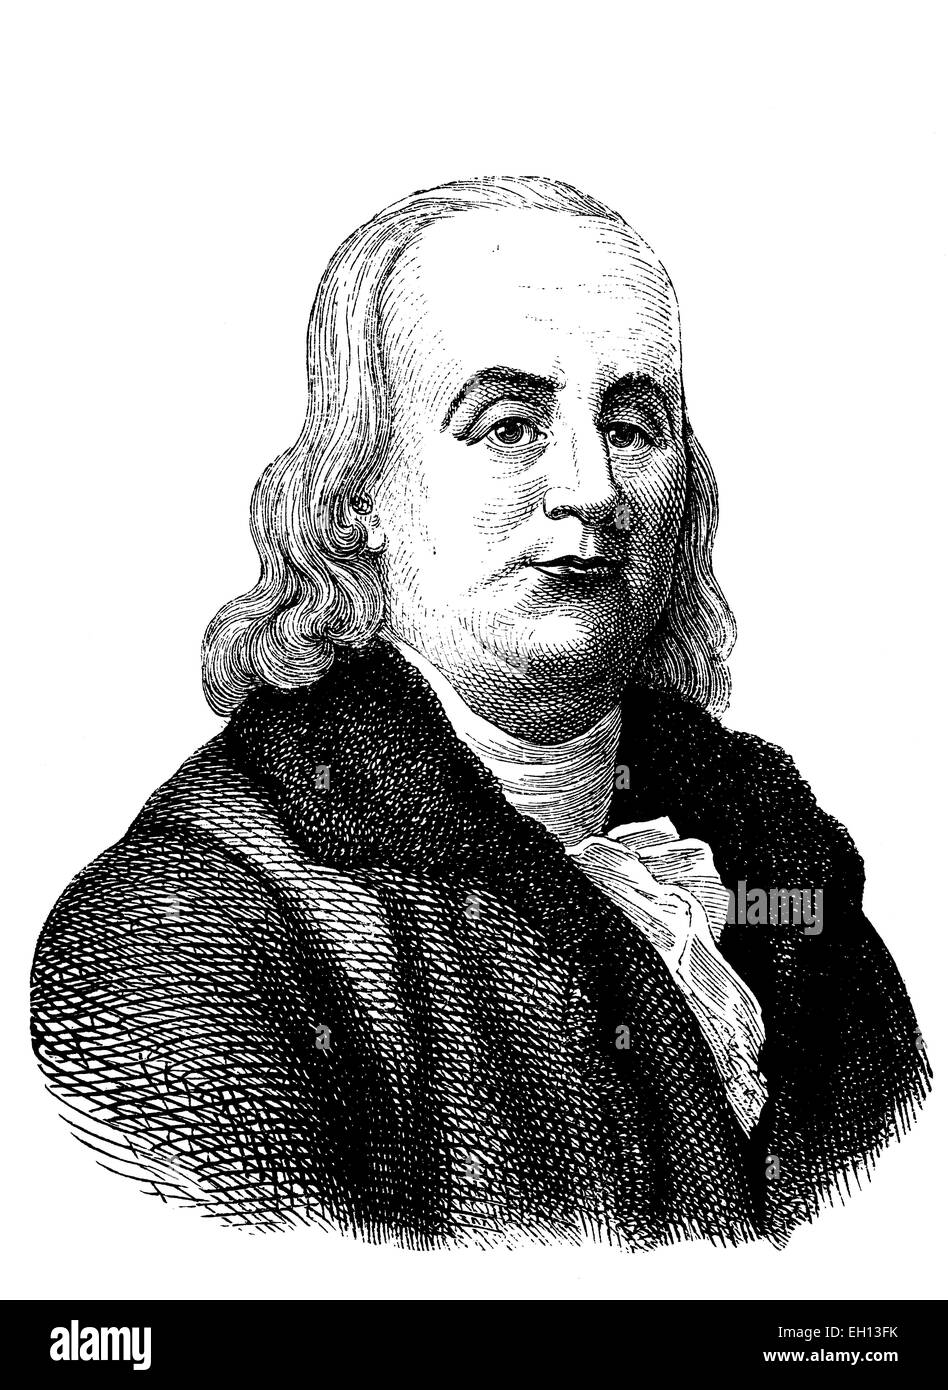 Benjamin Franklin, 1706 - 1790, l'un des fondateurs des États-Unis d'Amérique, l'inventeur de l'historique de paratonnerre, gravure sur bois, vers 1880 Banque D'Images